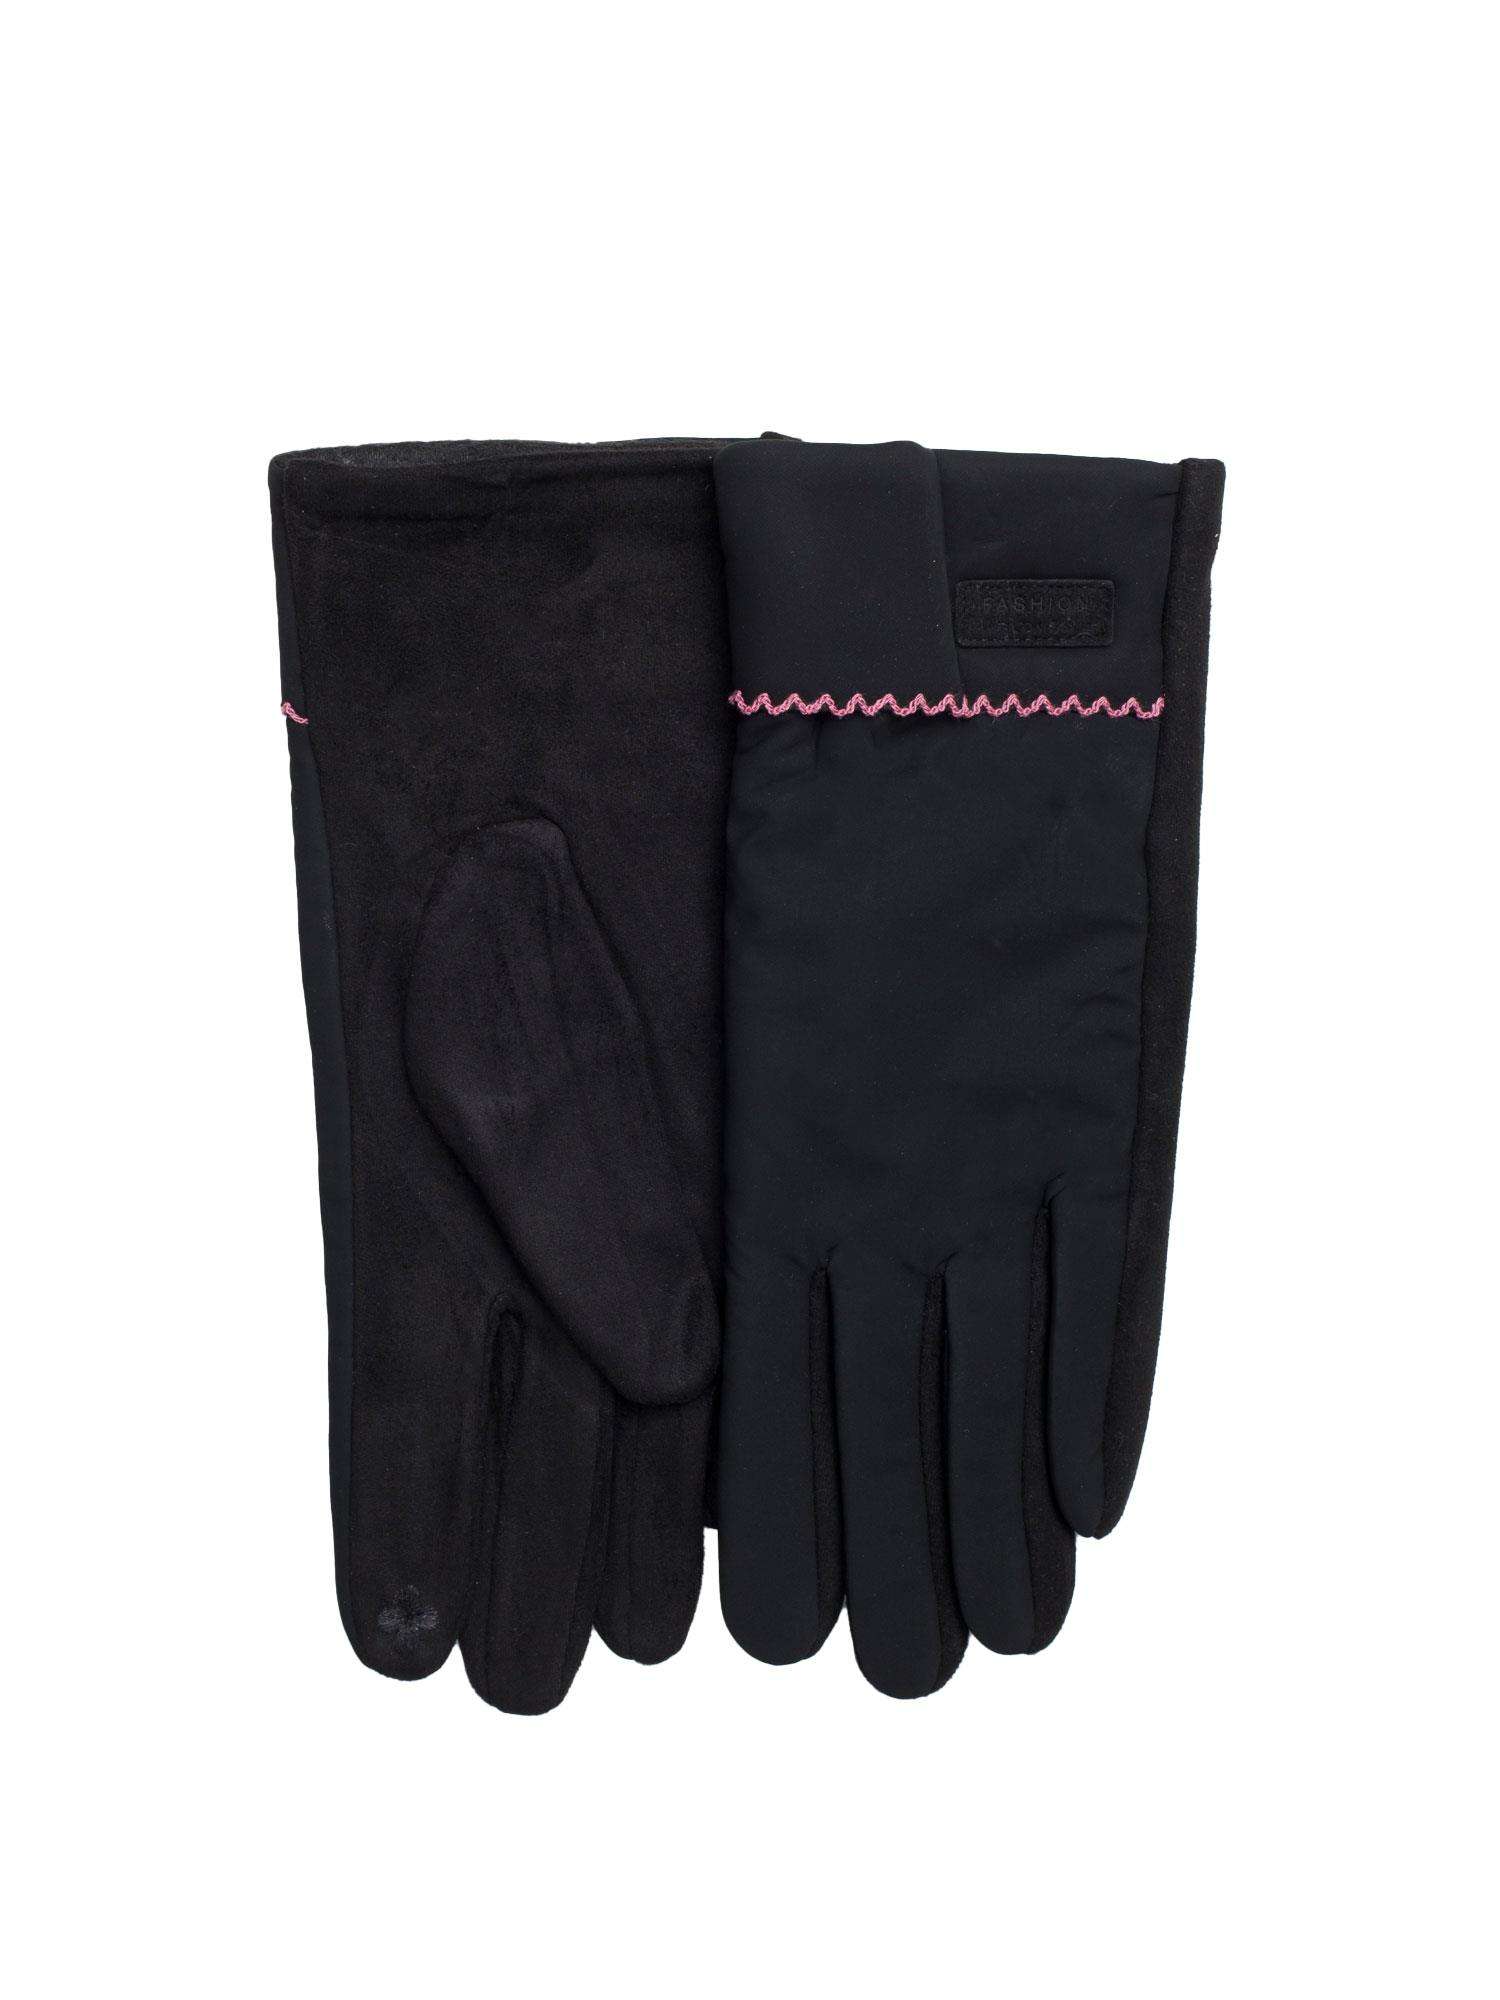 Dámske čierne rukavice - M